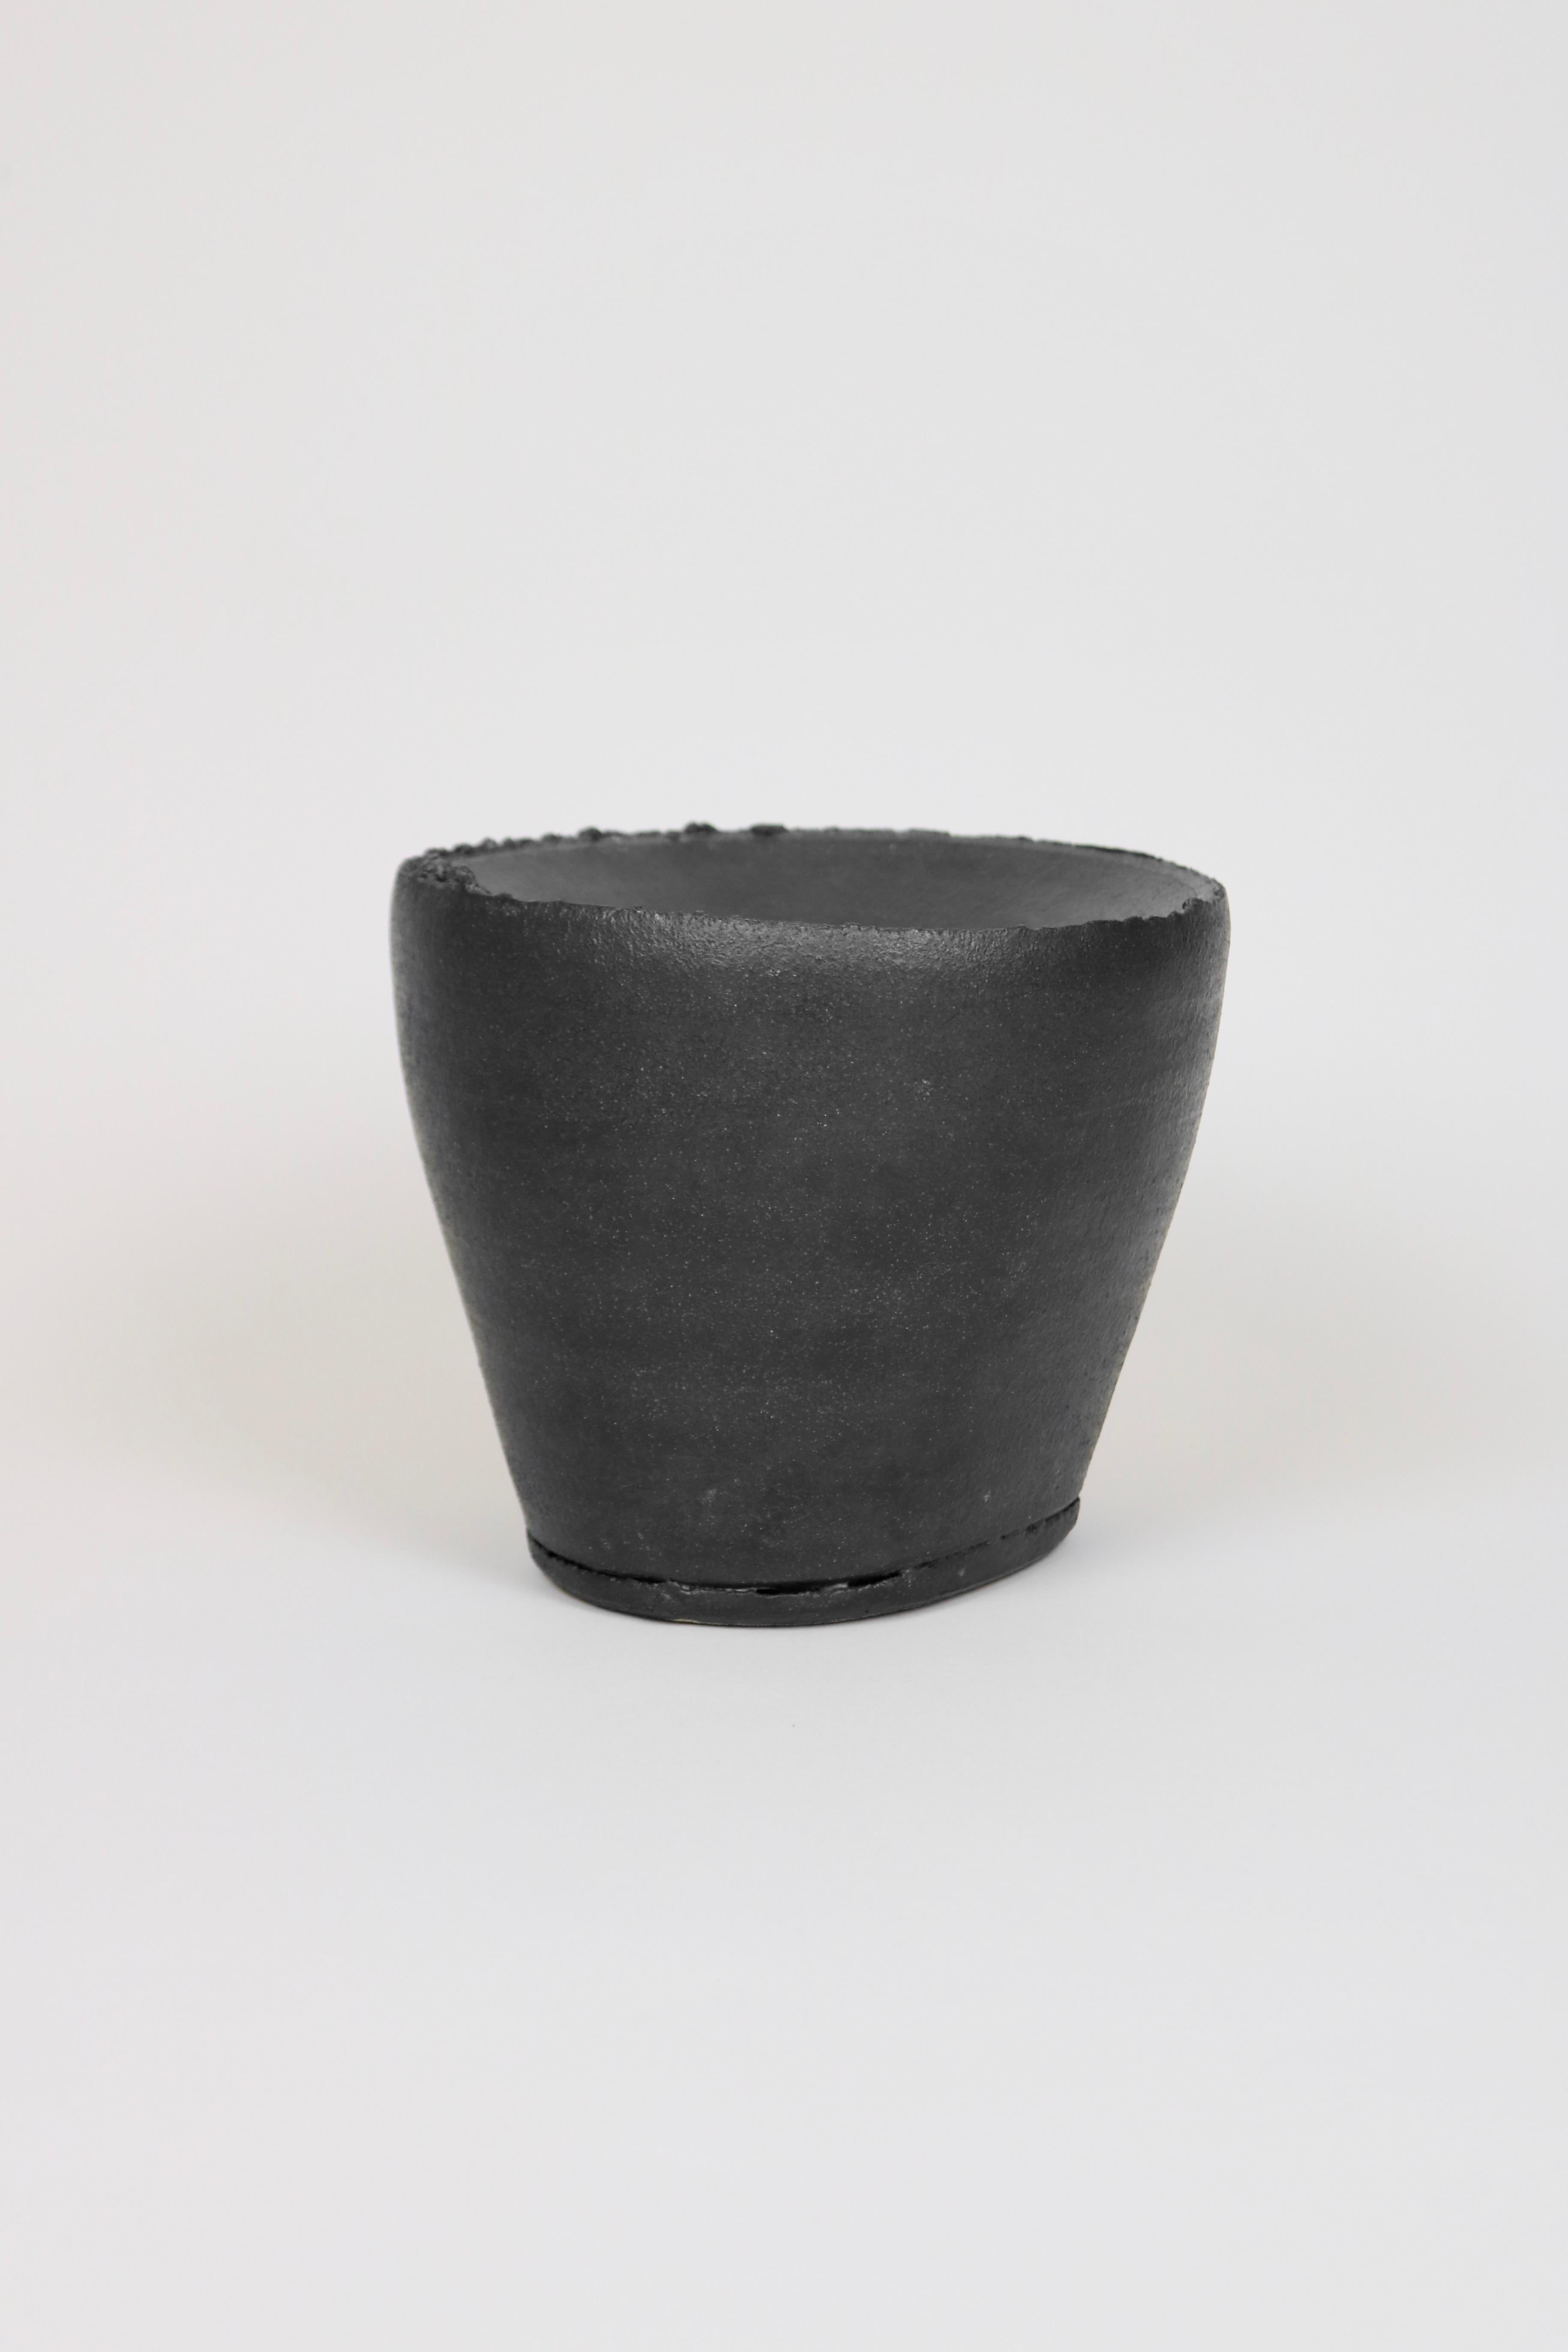 Ceramic Dan Kelly Black Vase For Sale